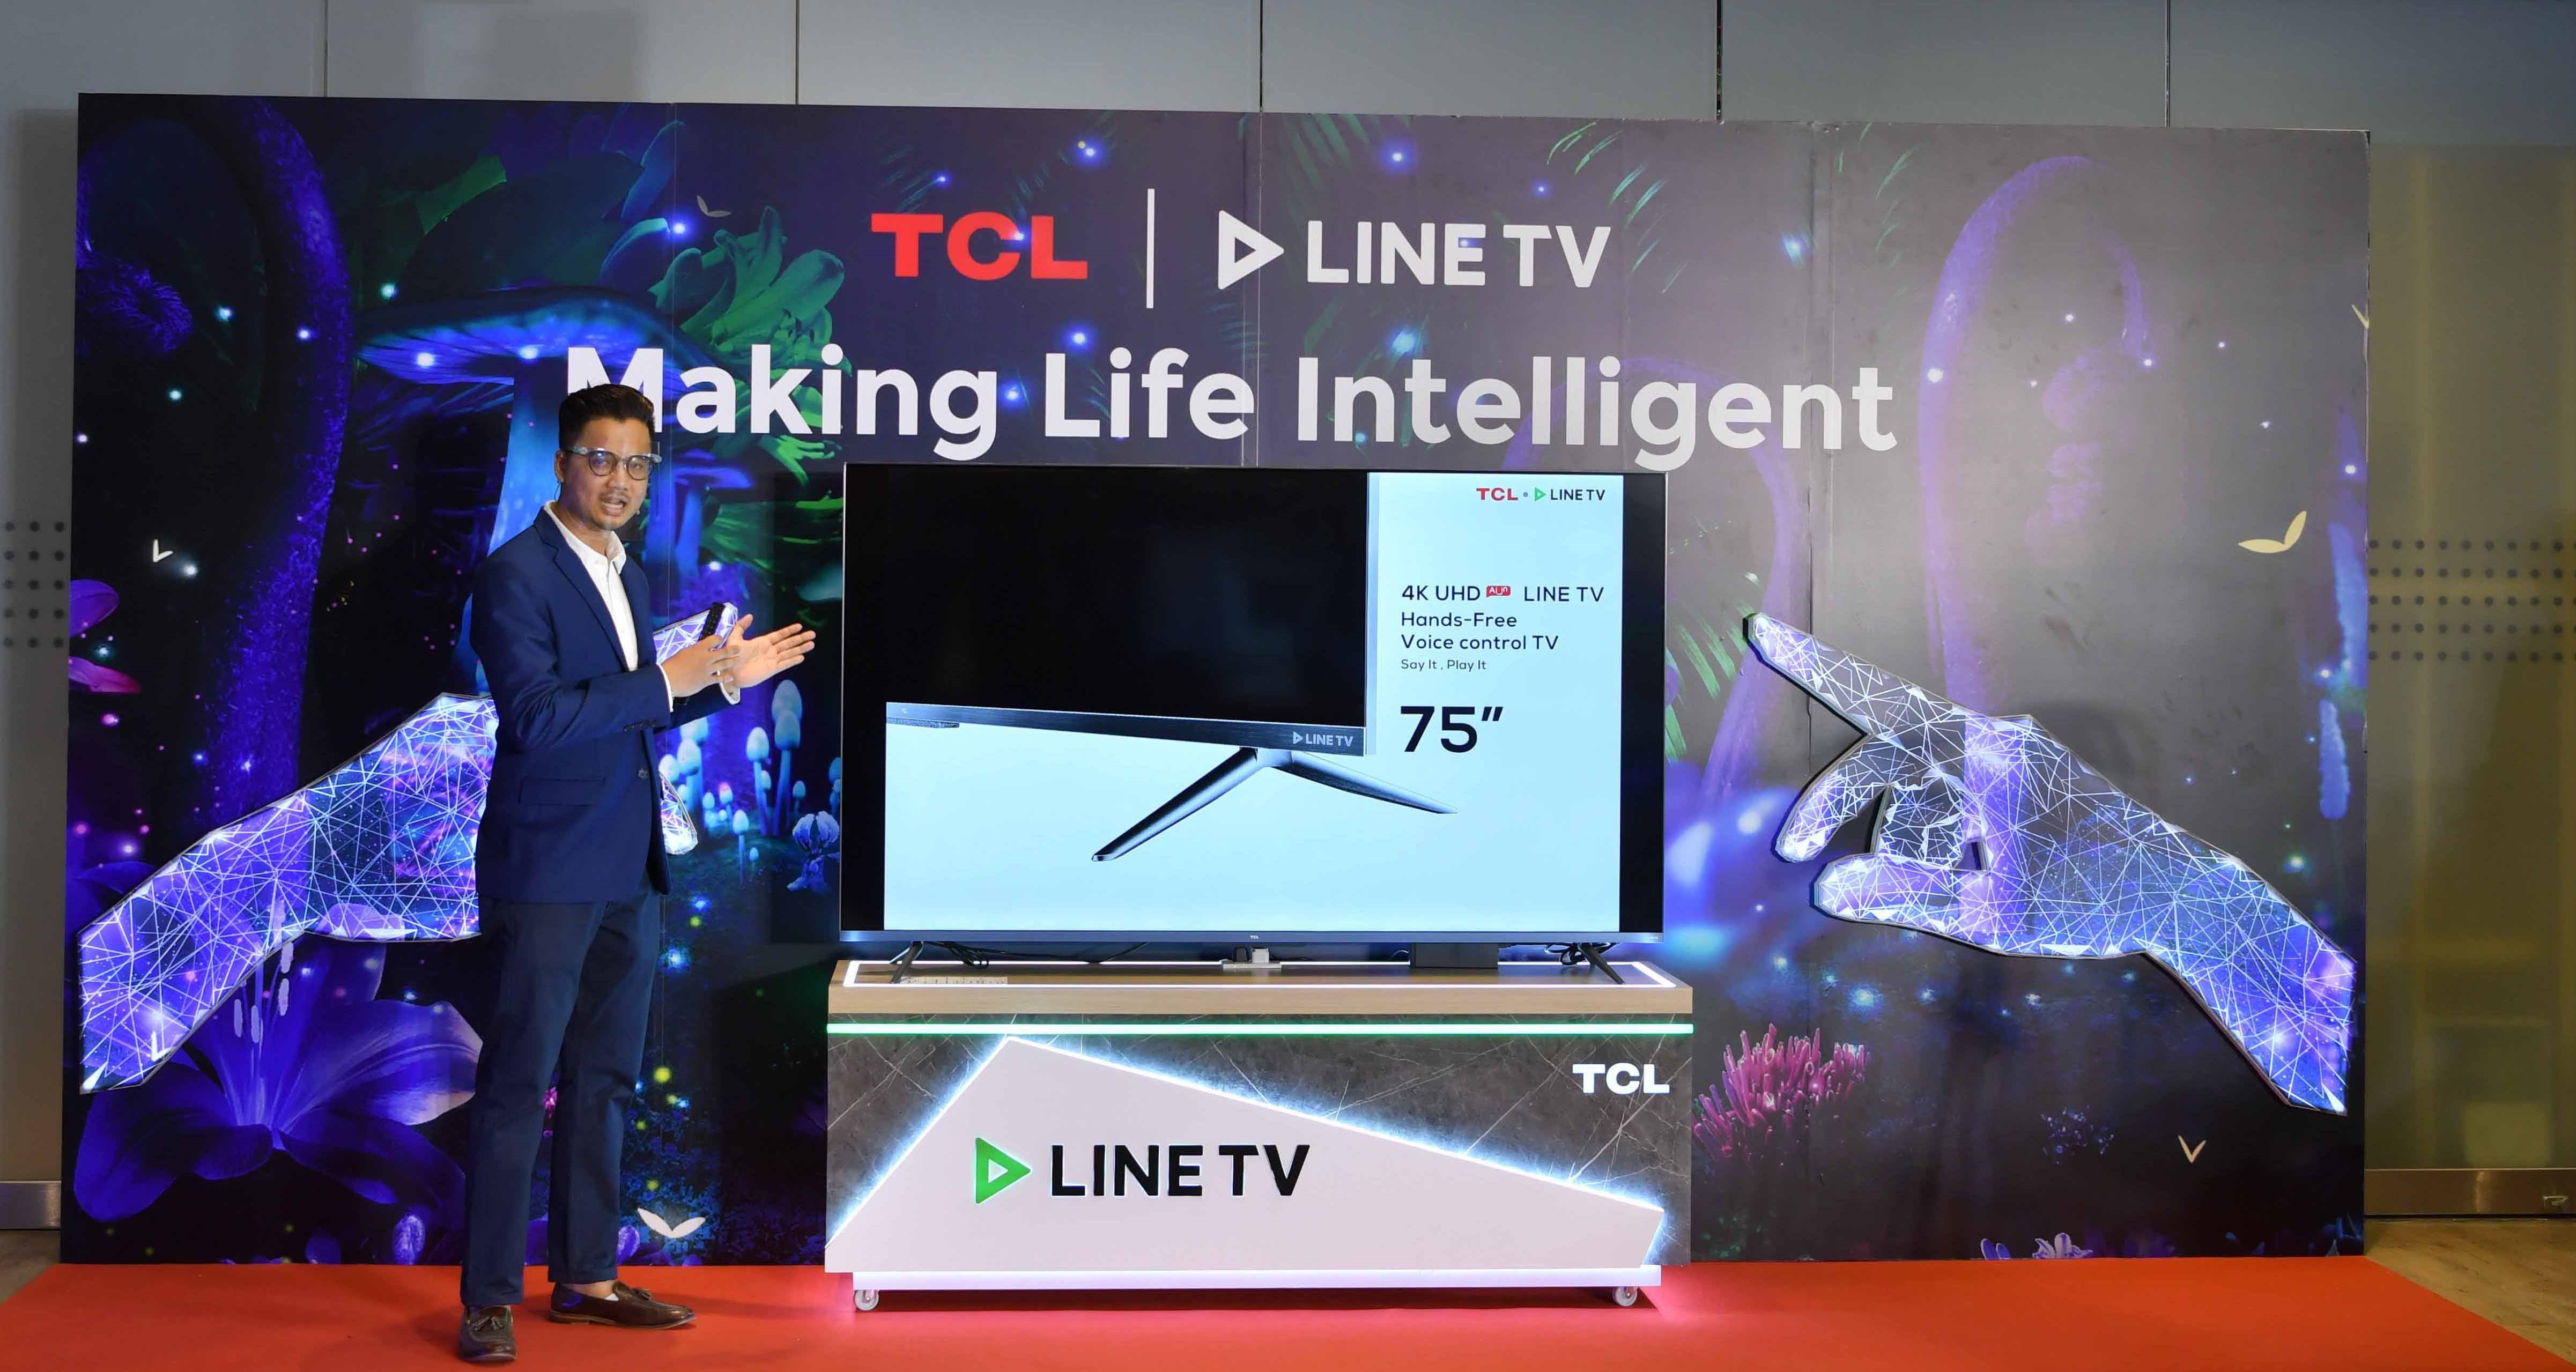 ทีซีแอลผู้นำตลาดแอนดรอยด์ทีวี ประกาศจับมือ LINE TV เปิดตัว TCL TV รุ่น LINE TV มอบสิทธิพิเศษดูLINE TV ไม่มีโฆษณานาน 1 ปี